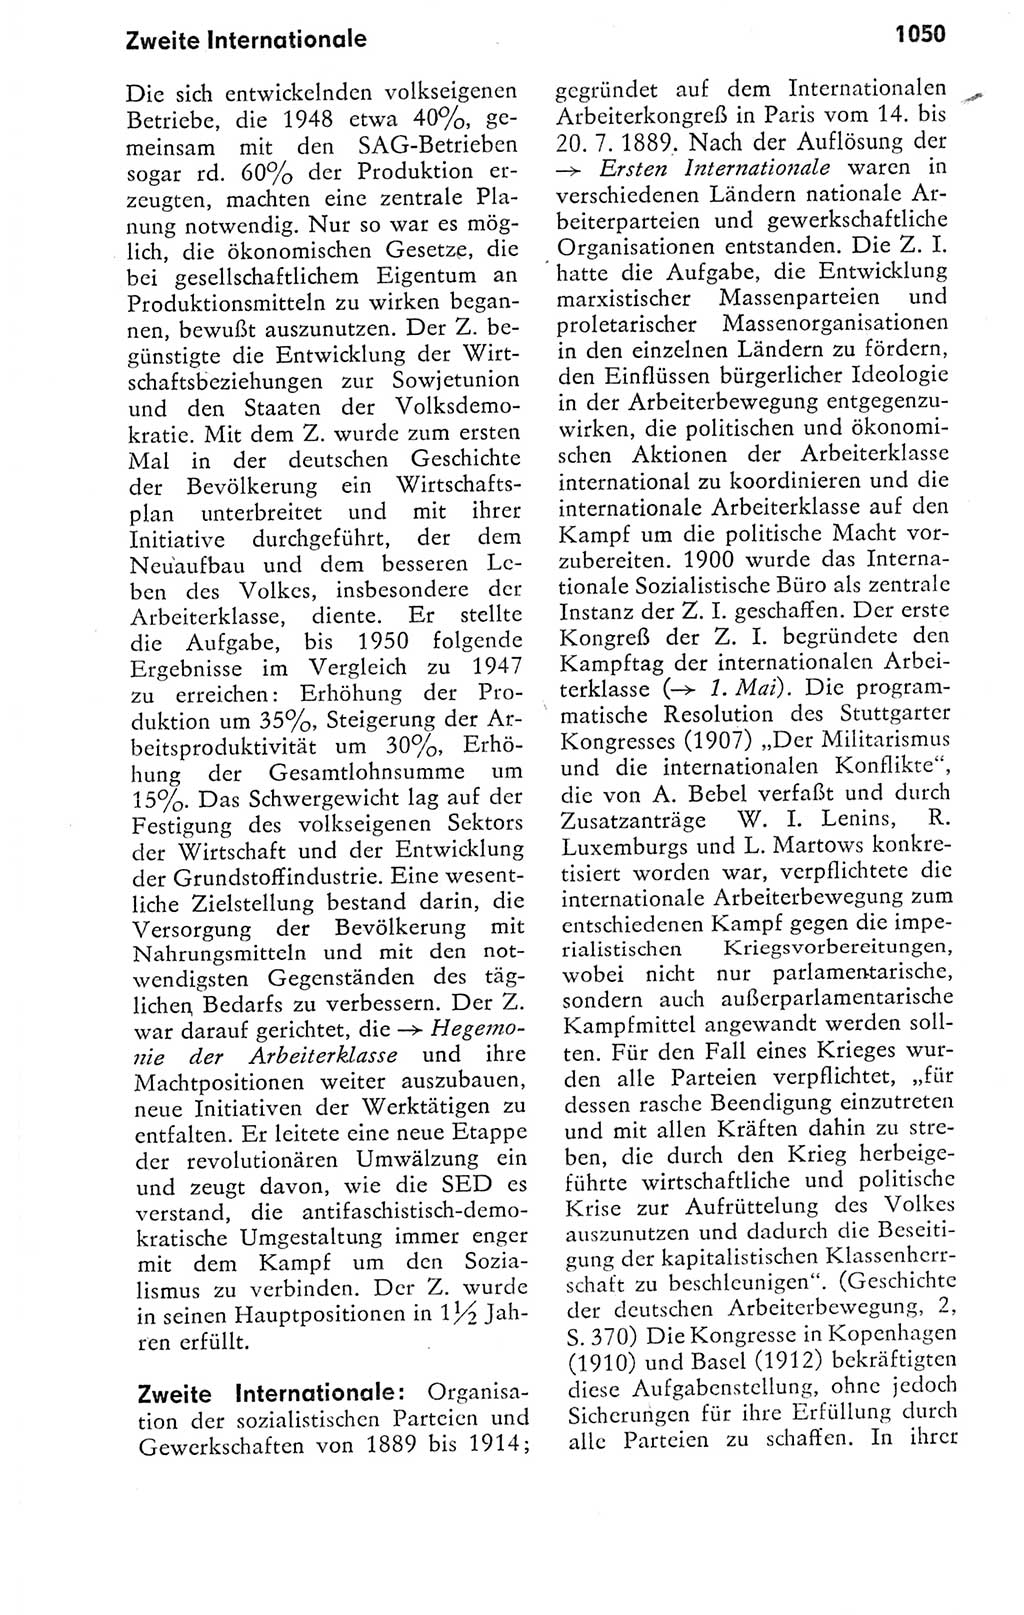 Kleines politisches Wörterbuch [Deutsche Demokratische Republik (DDR)] 1978, Seite 1050 (Kl. pol. Wb. DDR 1978, S. 1050)